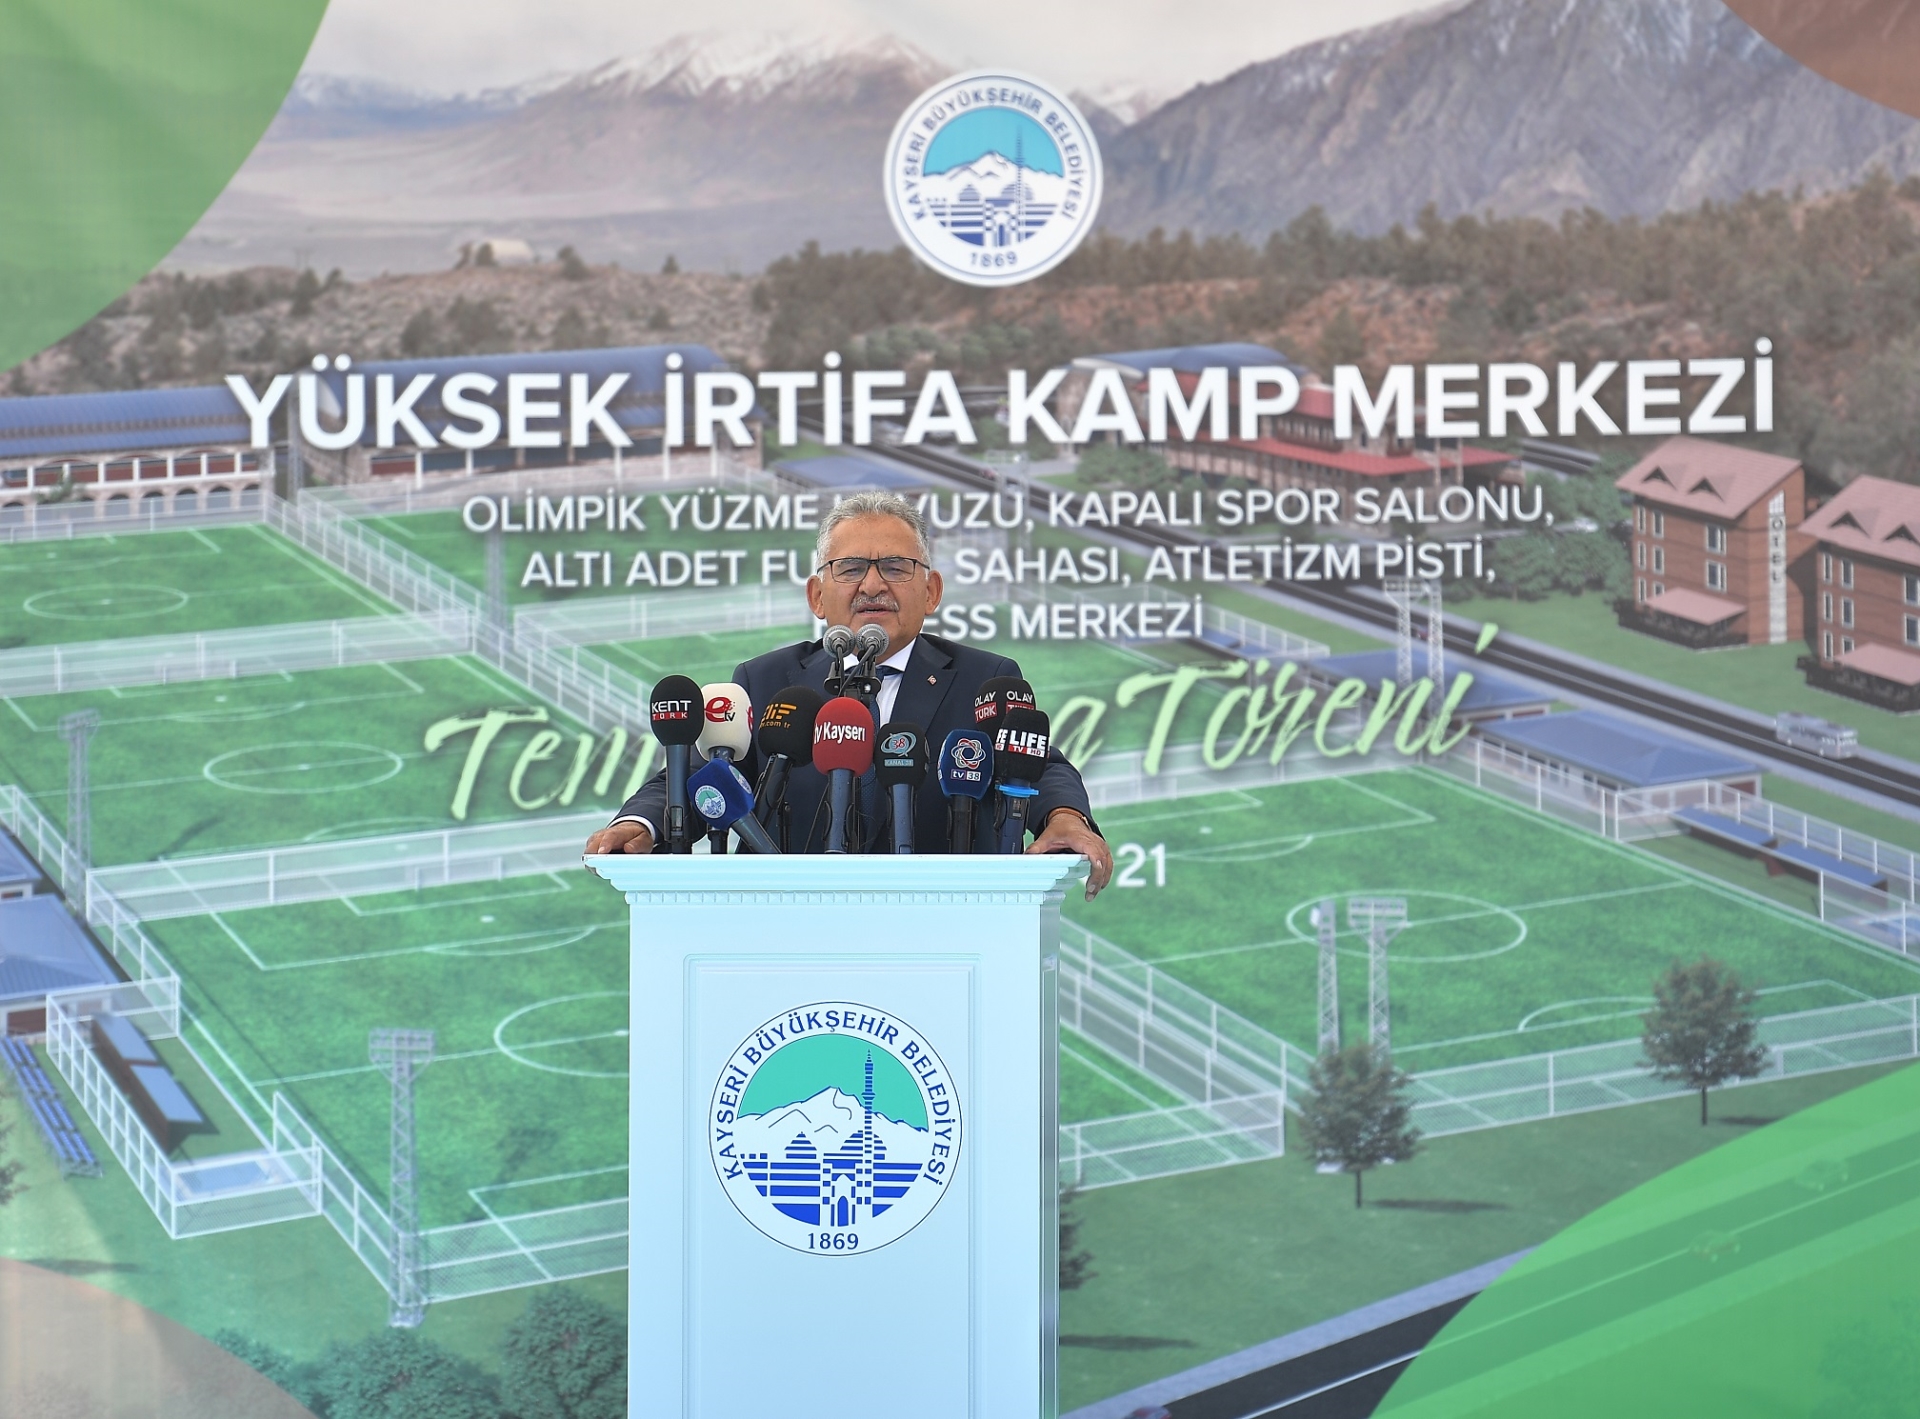 Erciyes Yüksek İrtifa Kamp Merkezi, Takımları Ağırlamaya Devam Ediyor